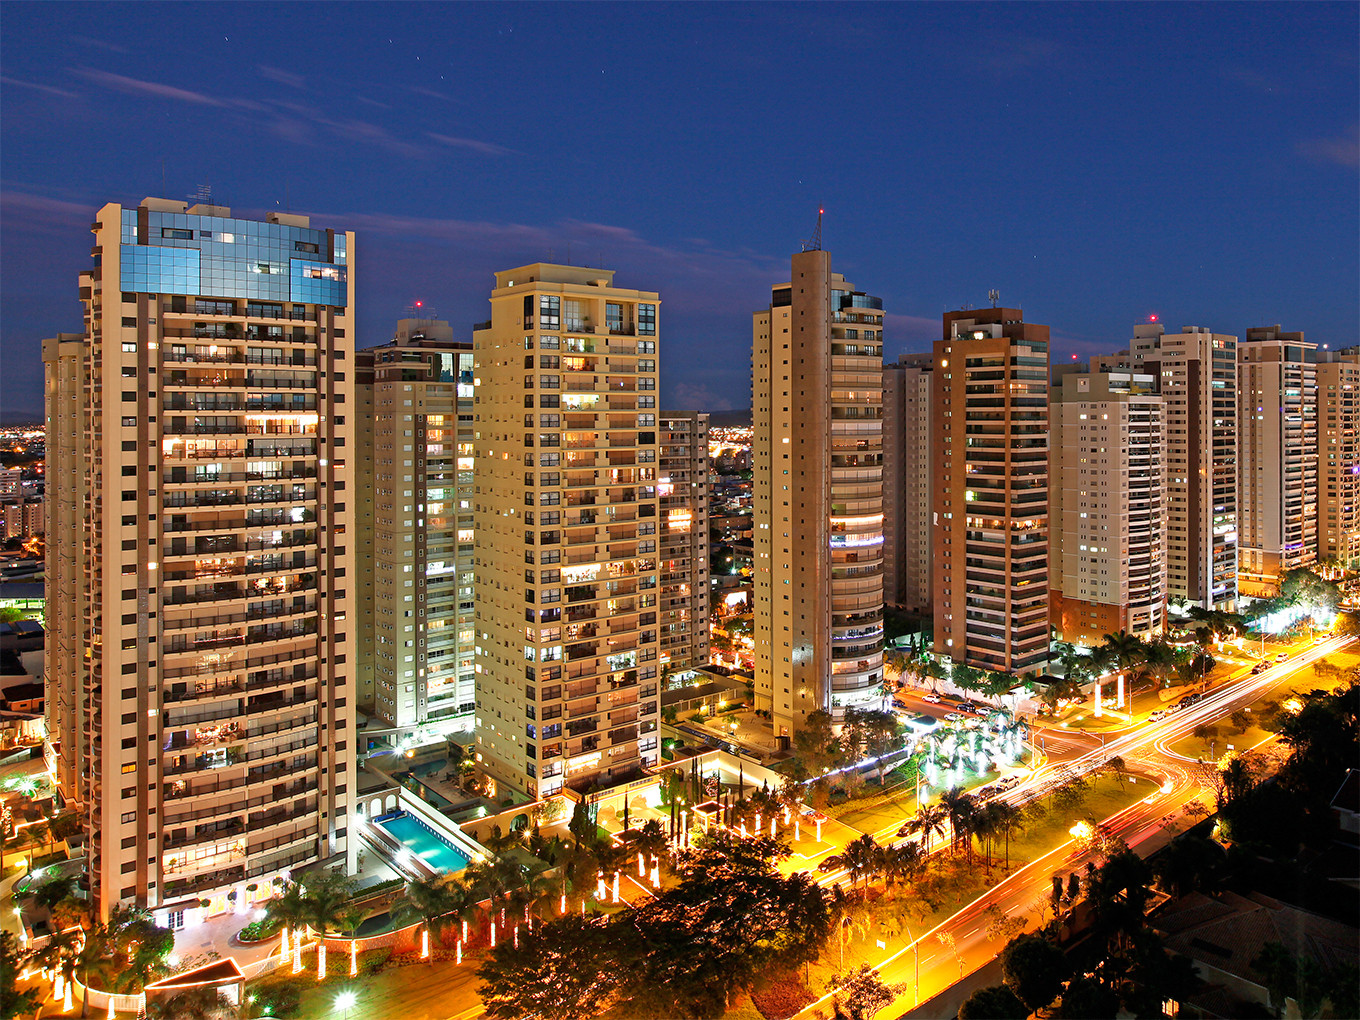 Hotéis em Ribeirão Preto  Pesquise e compare ótimas ofertas no trivago